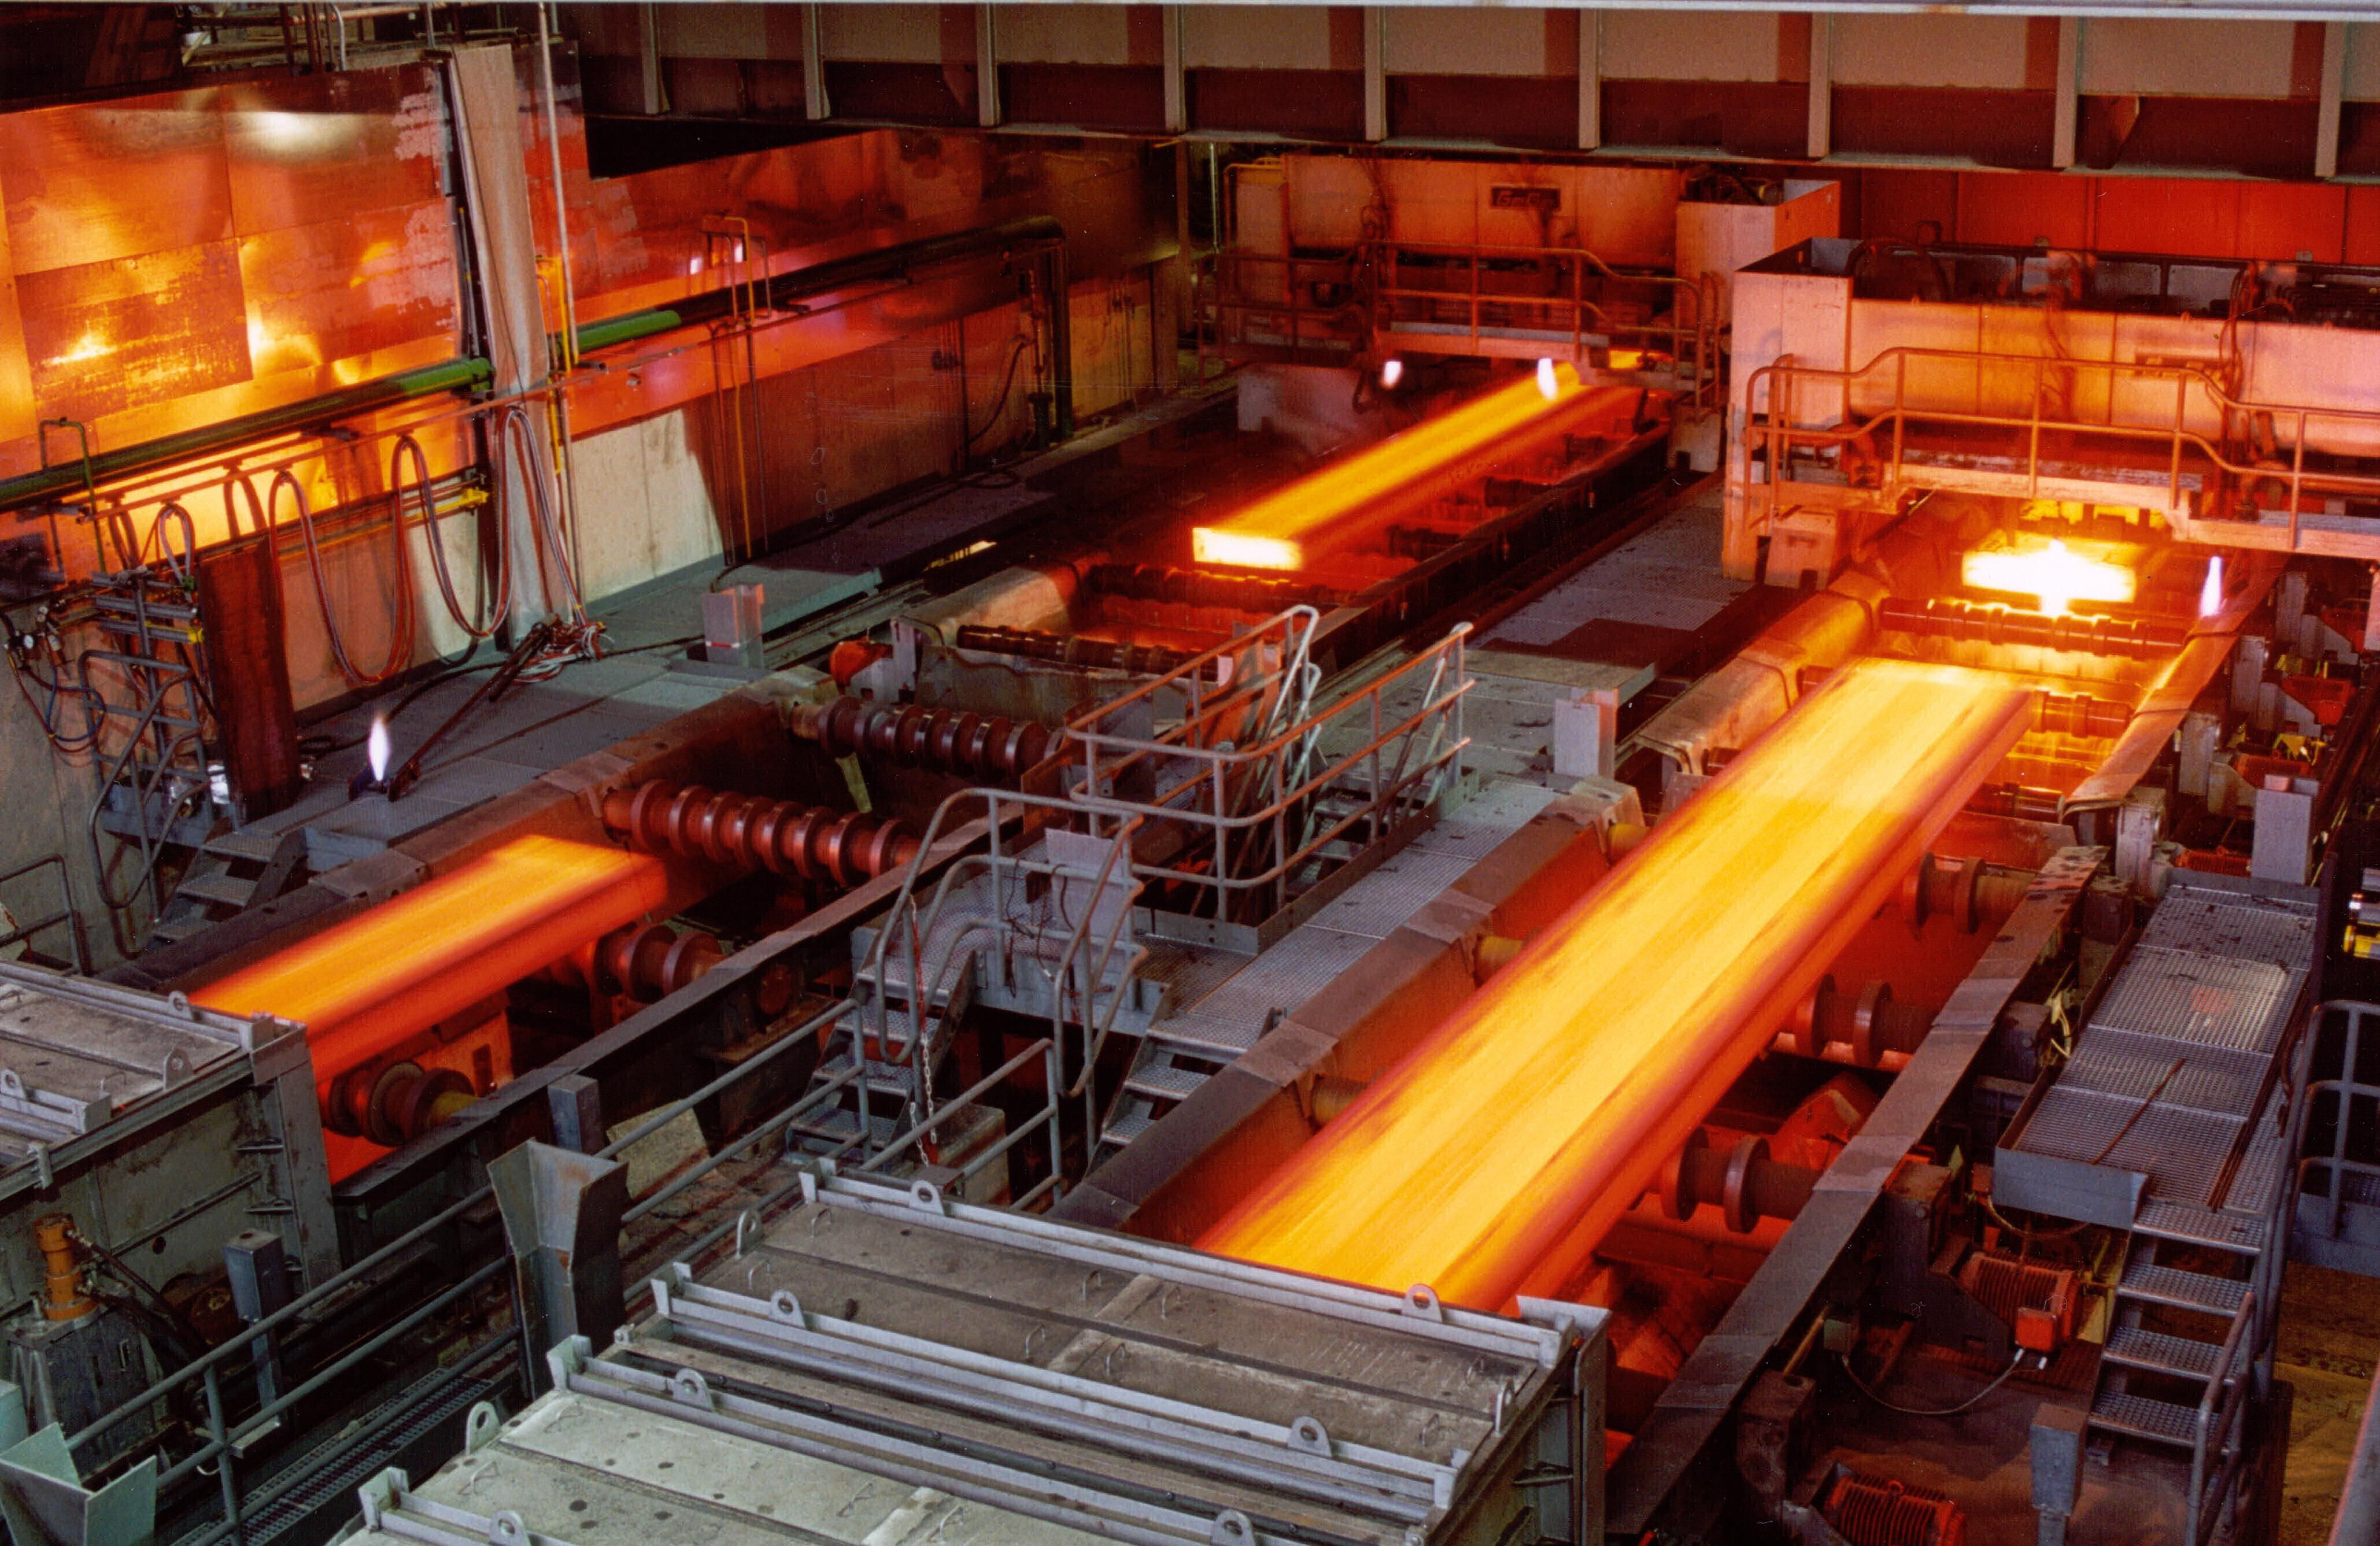  صنعت فلزات در ایران2 